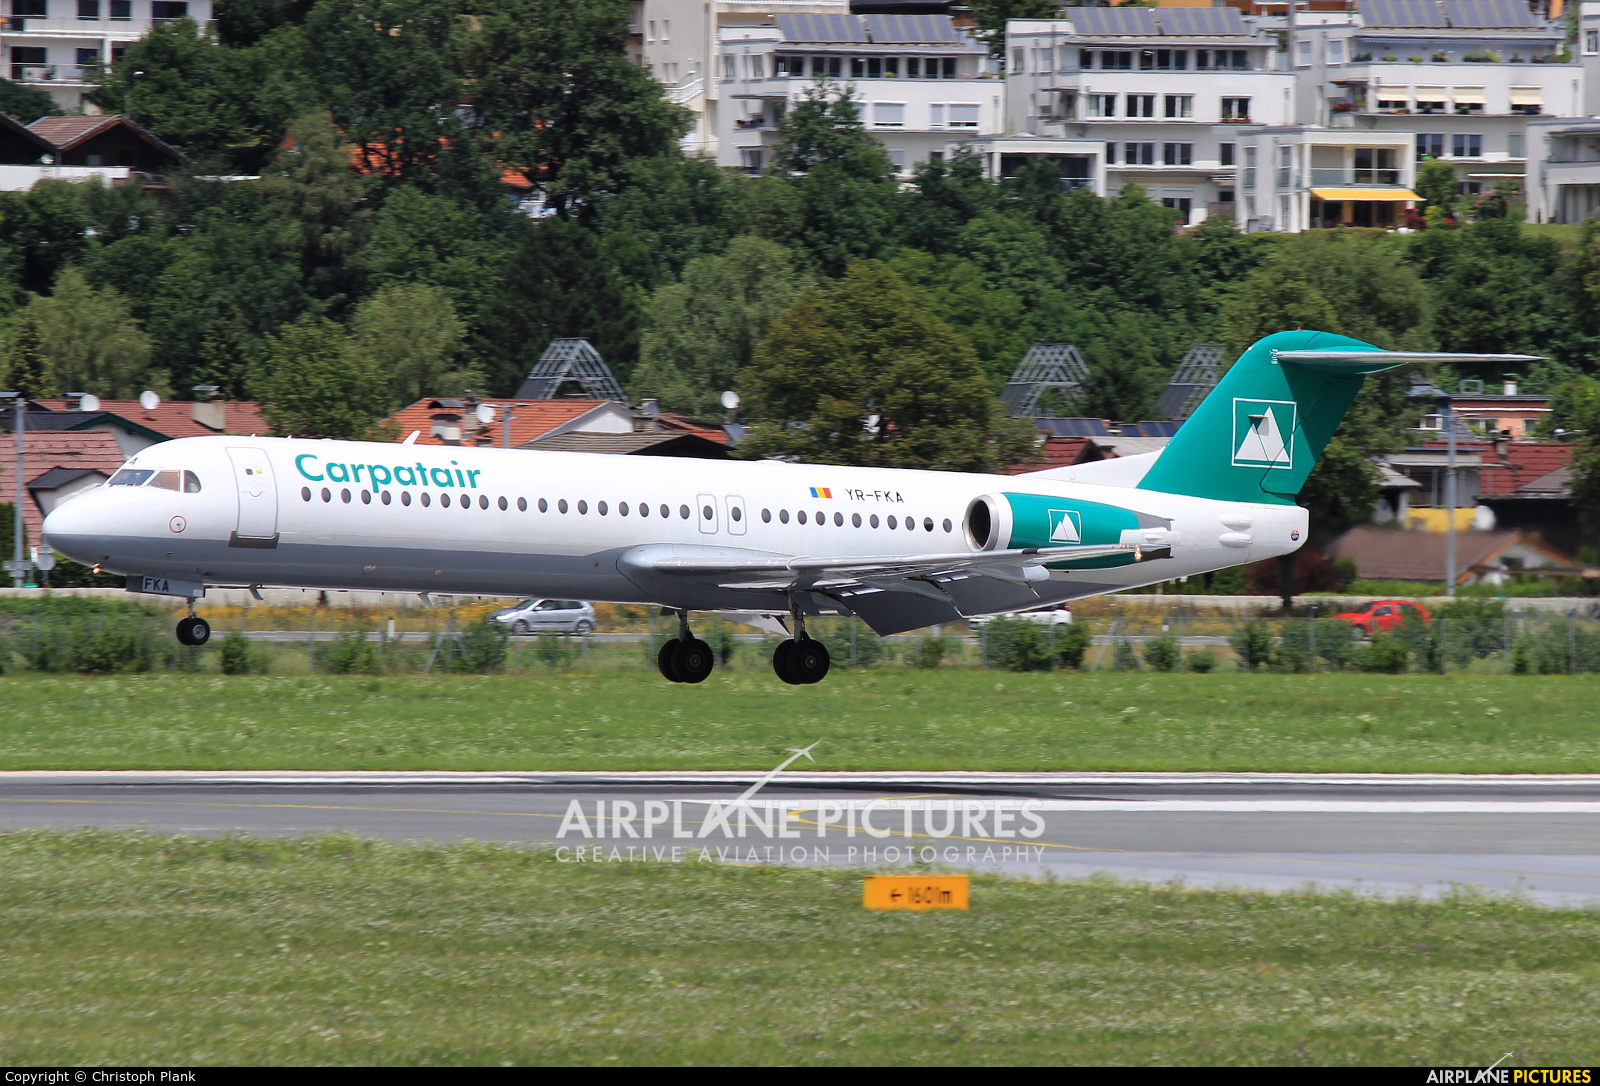 Carpatair YR-FKA aircraft at Innsbruck